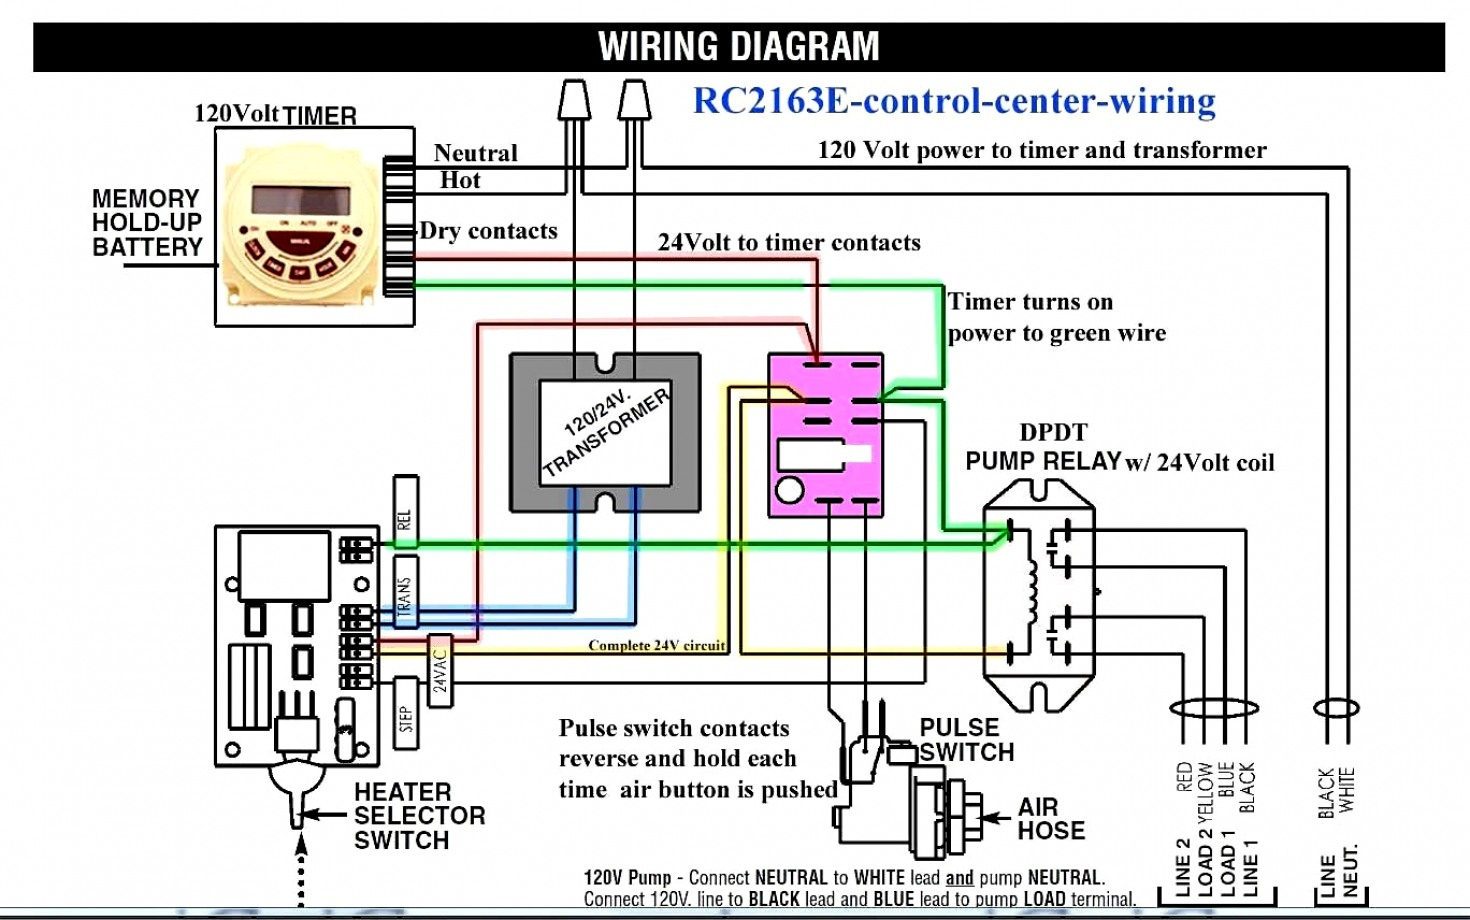 240 To 24V Transformer Wiring Diagram | Manual E-Books - 480V To 240V Transformer Wiring Diagram